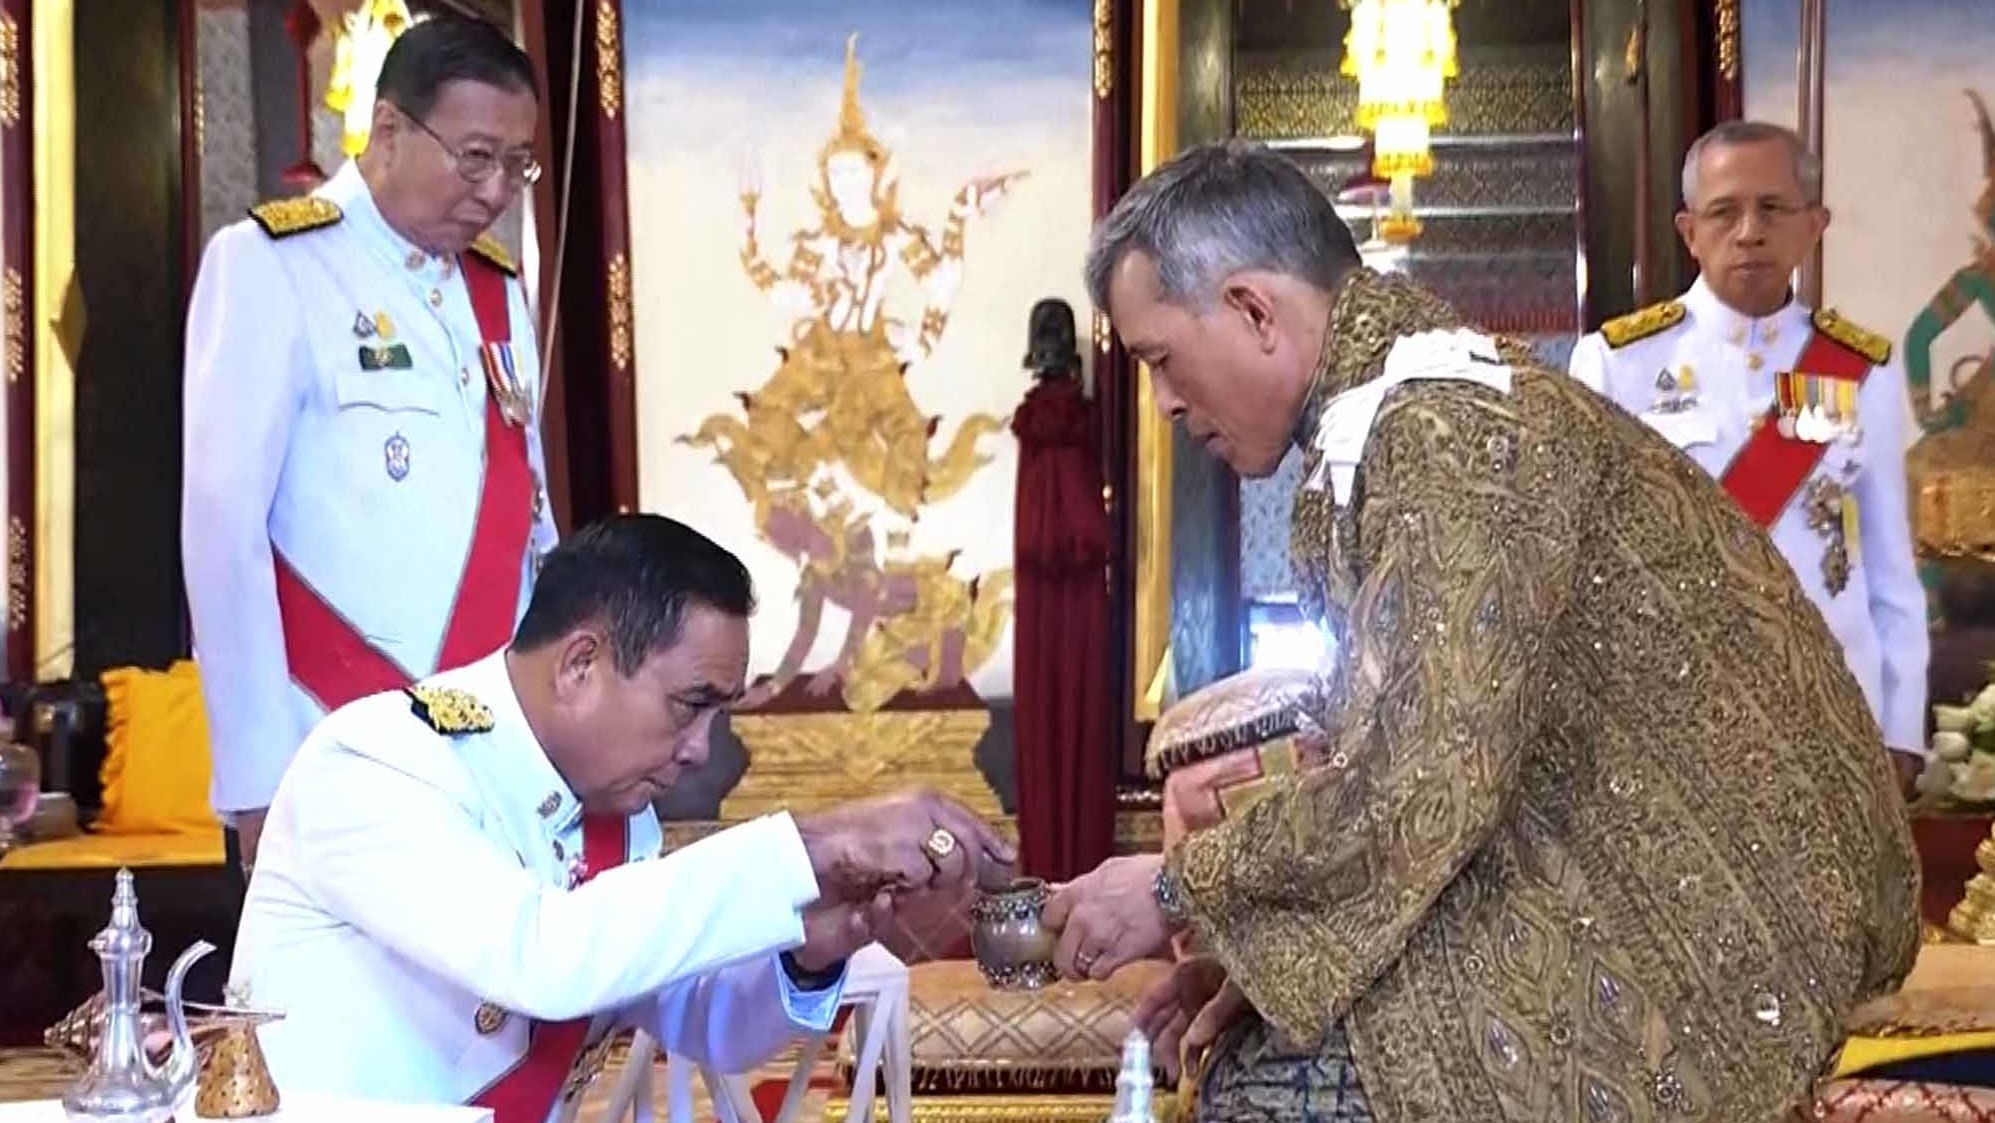 King Maha Vajiralongkorn attends the anointment ceremony.